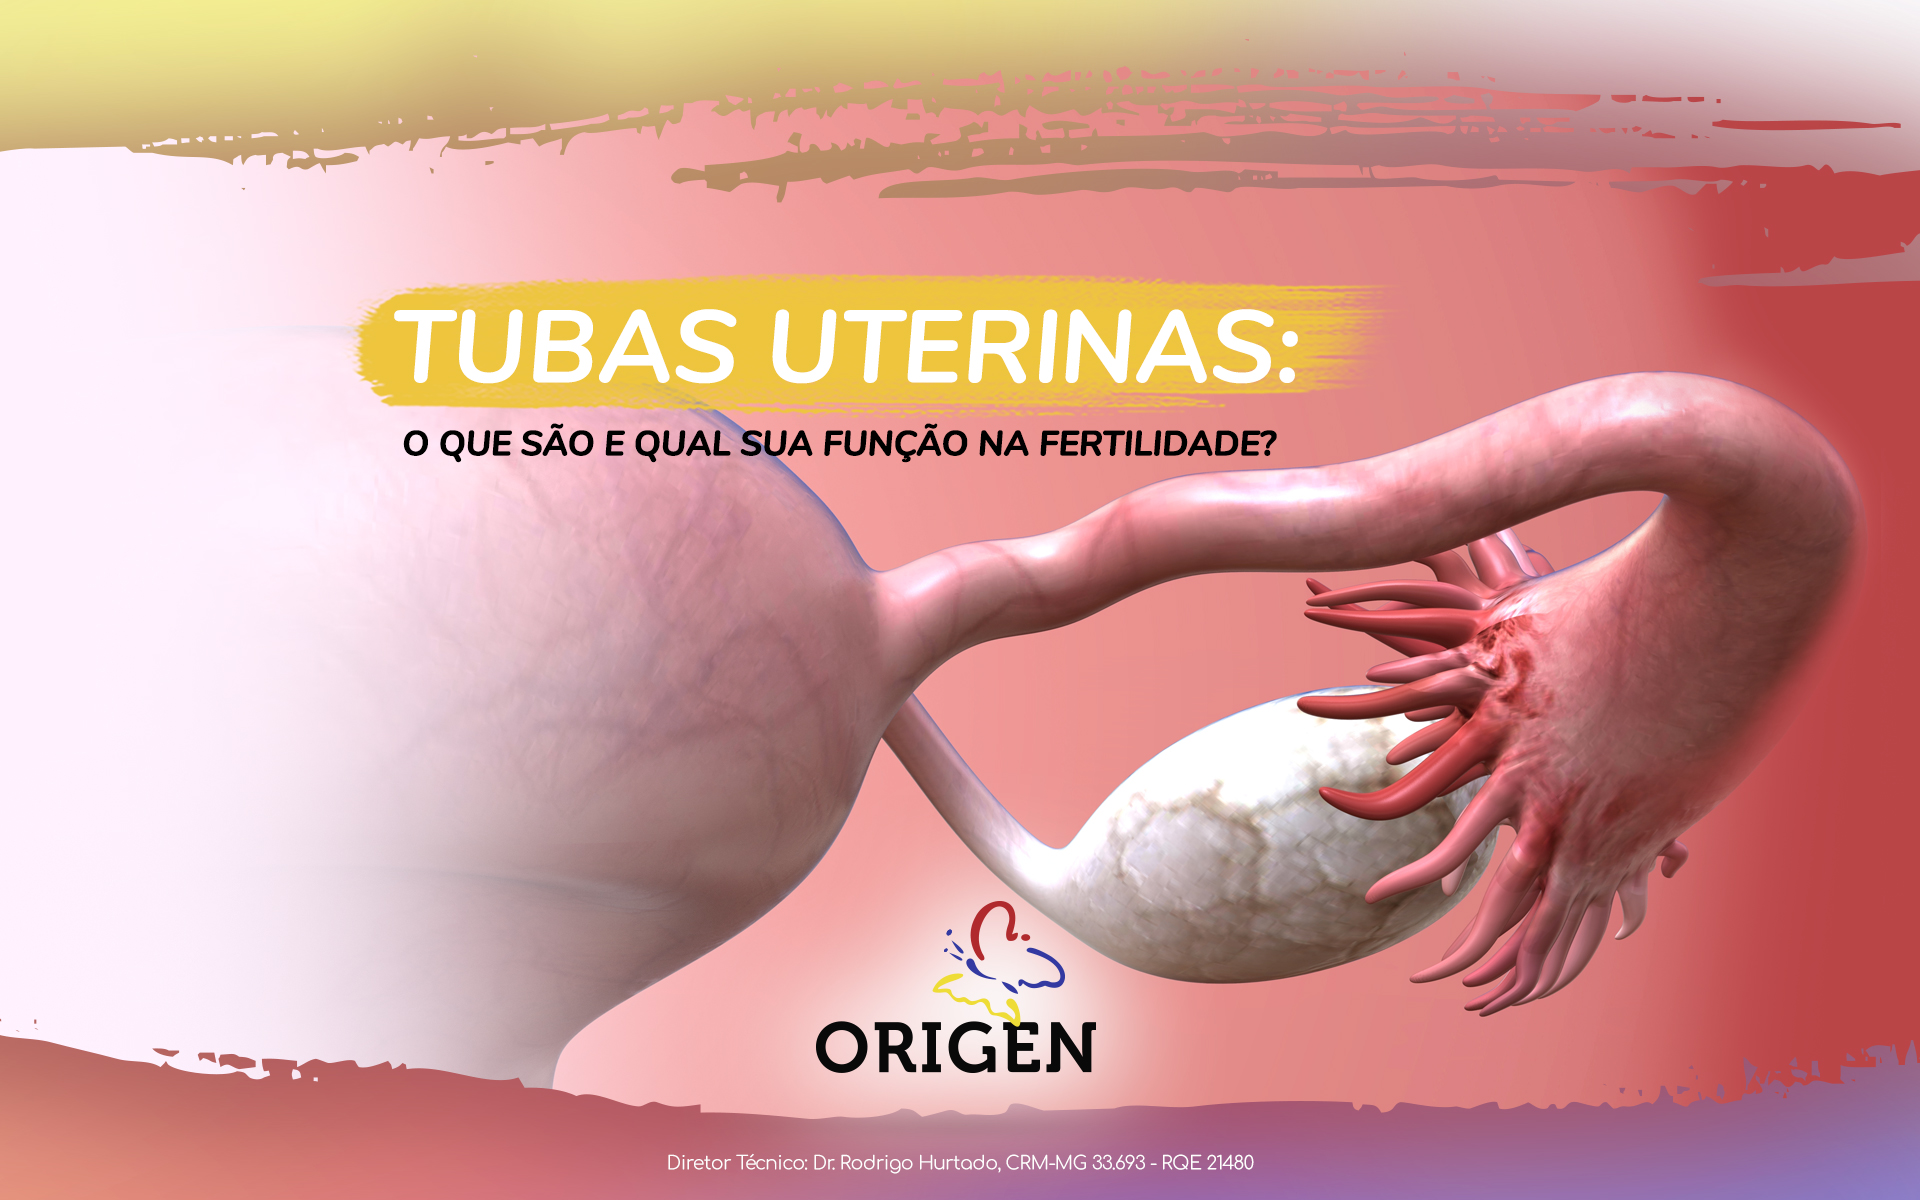 Tubas uterinas: o que são e qual sua função na fertilidade?